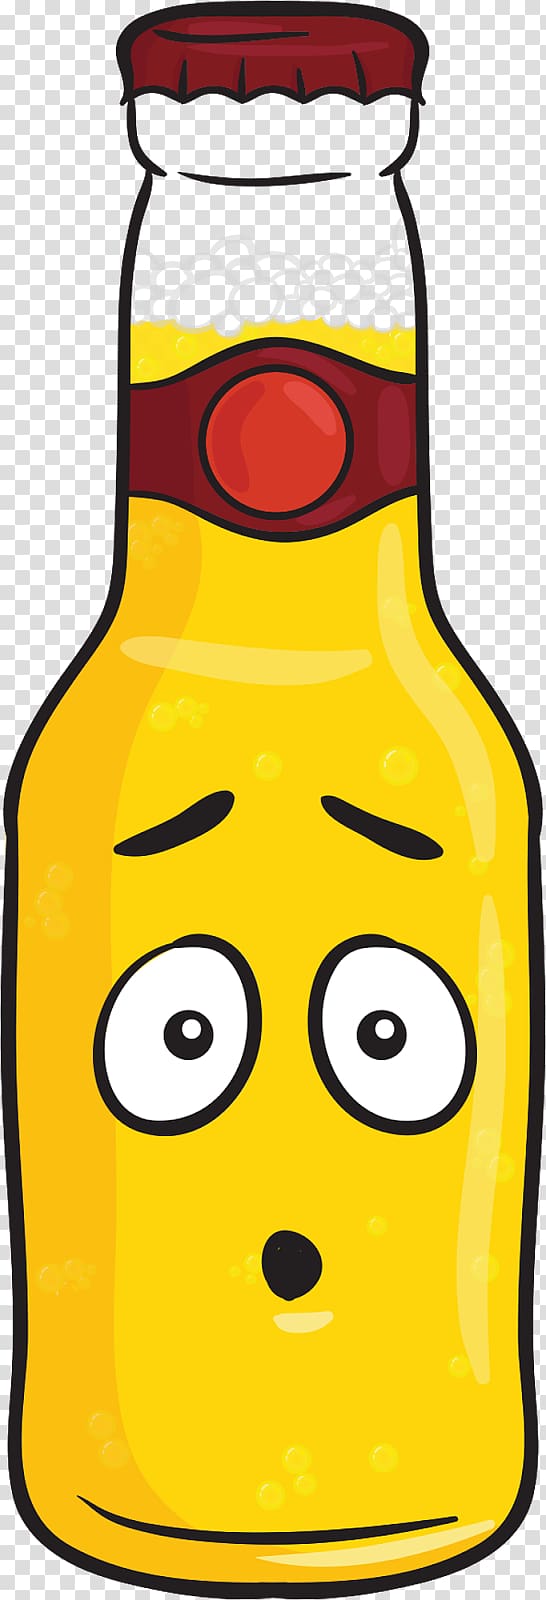 Beer bottle Malt liquor Alcoholic drink, beer Emoji transparent background PNG clipart